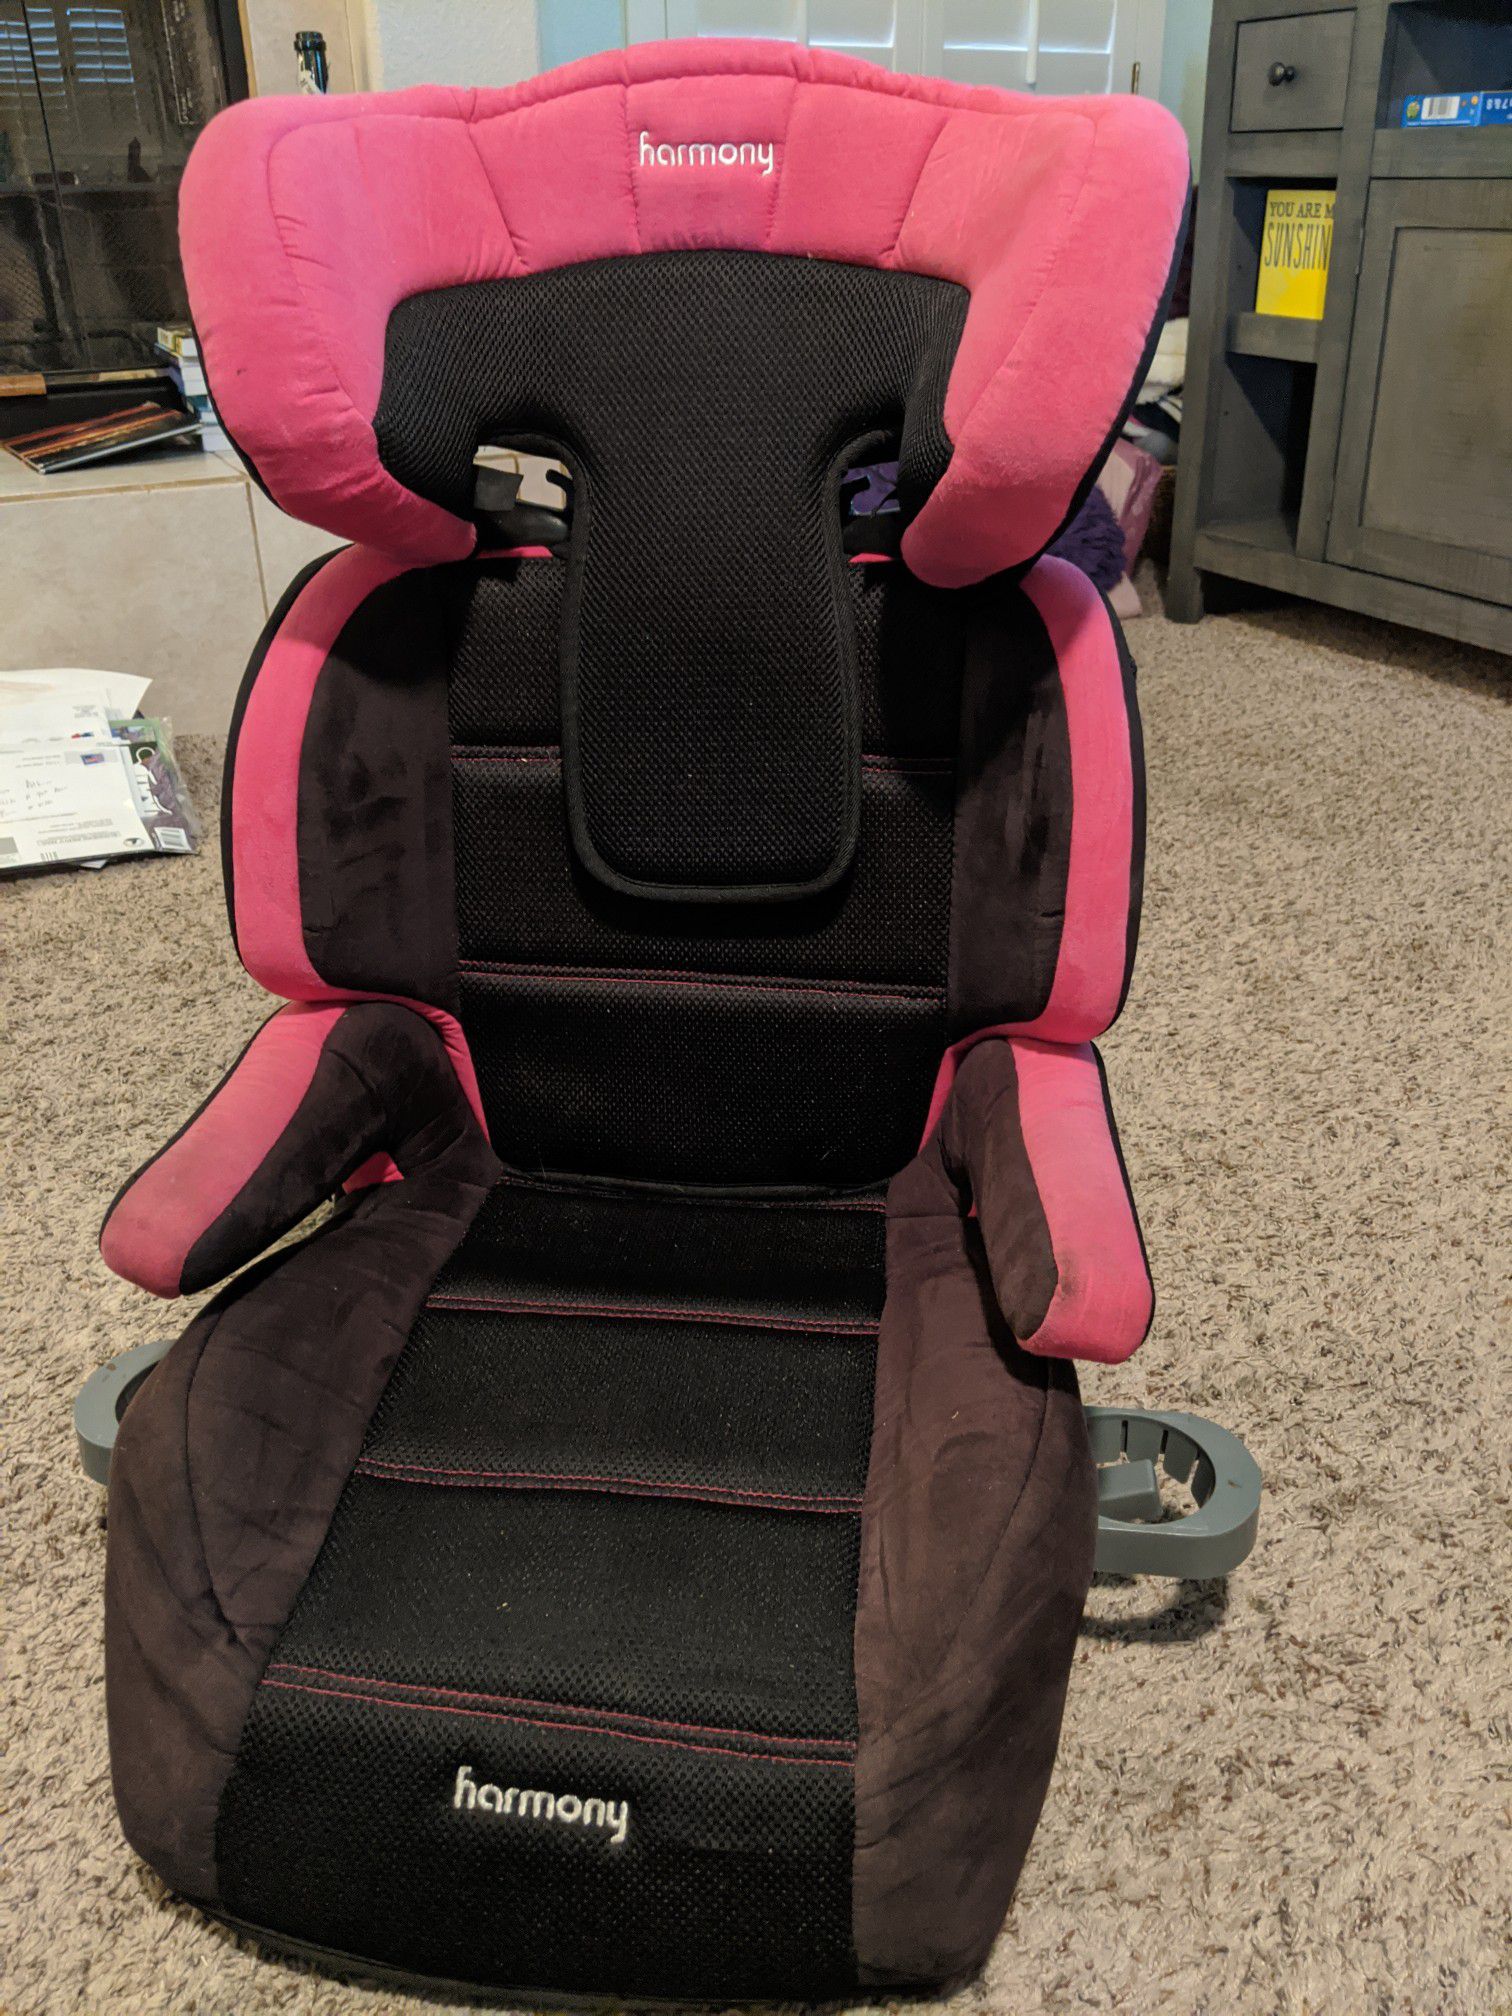 Kids booster seat/car seat